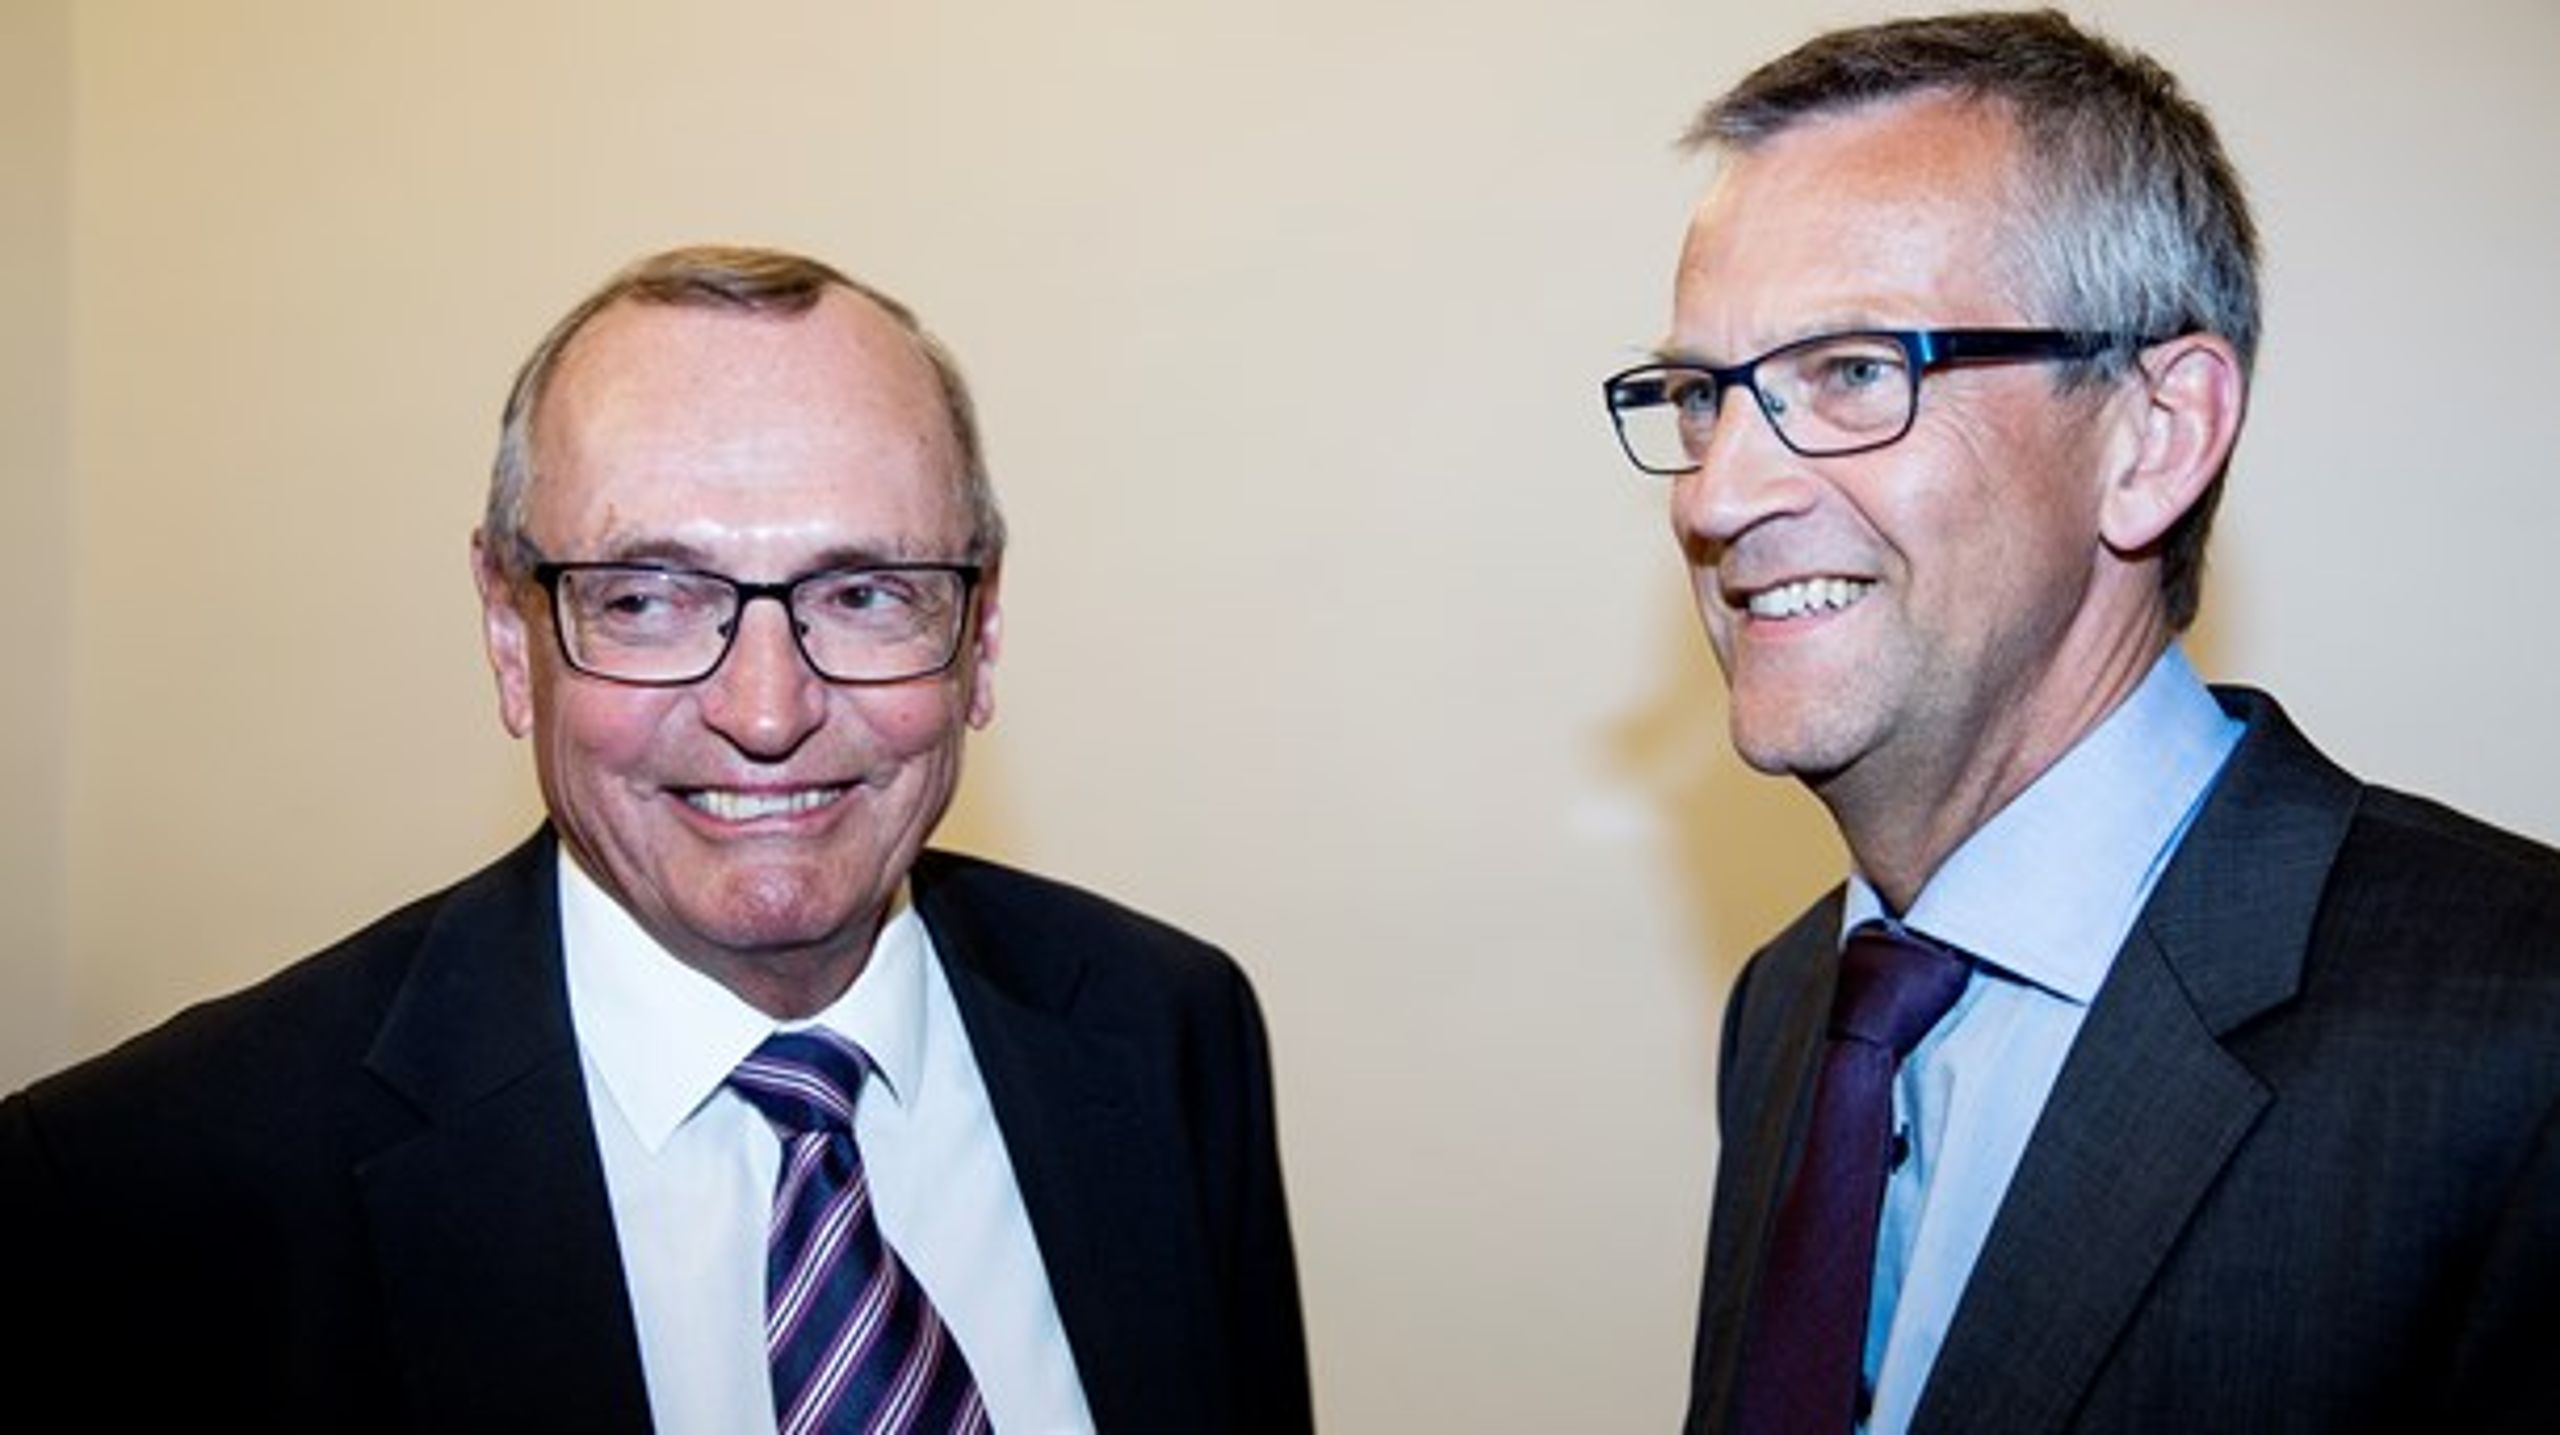 Formanden
og næstformanden for Danske Regioner, Bent Hansen (S) og Jens Stenbæk (V), var torsdag til det første officielle forhandlingsmøde i Finansministeriet om
regionernes økonomi i 2017.